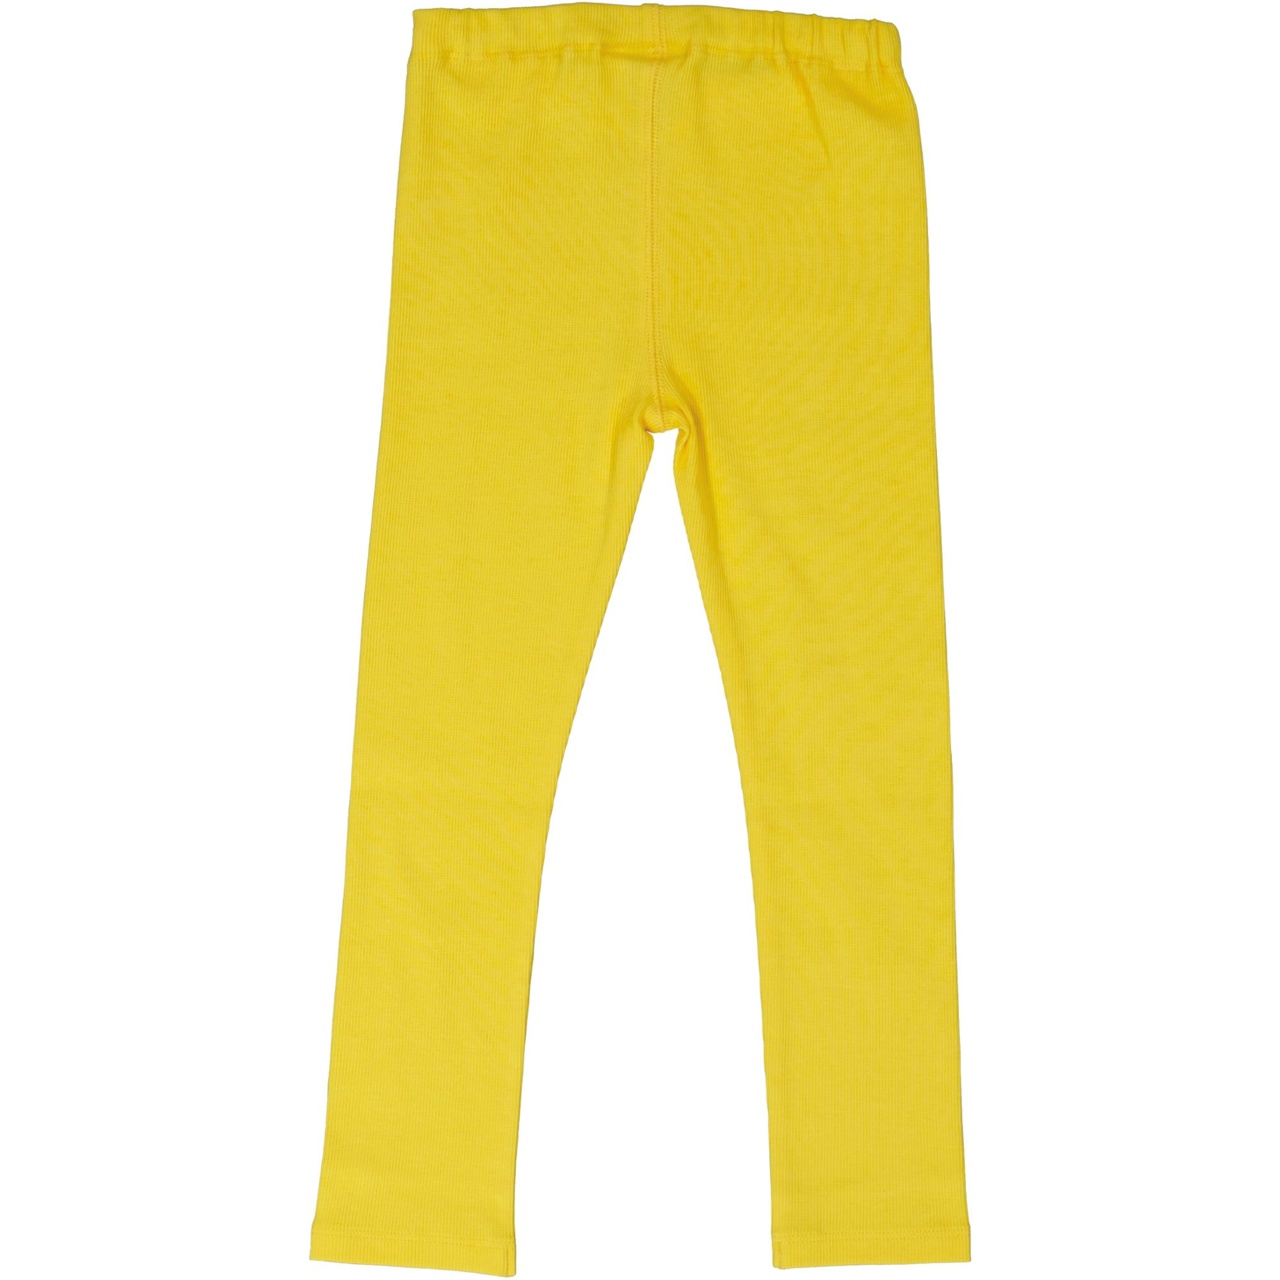 Leggings Yellow  110/116